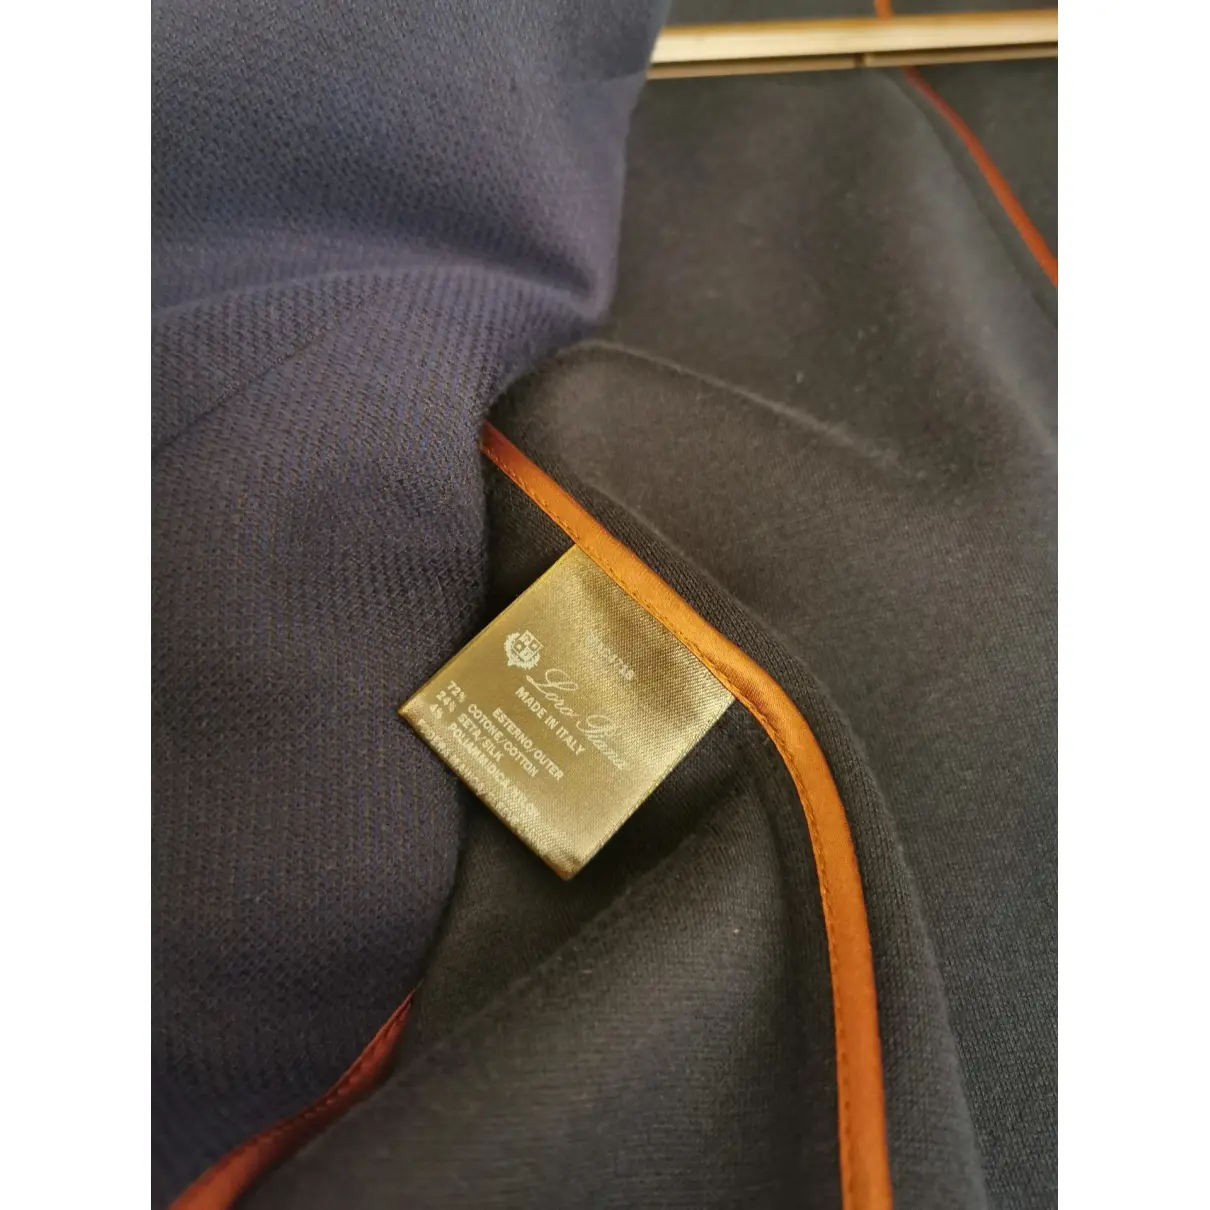 Buy Loro Piana Navy Cotton Jacket online